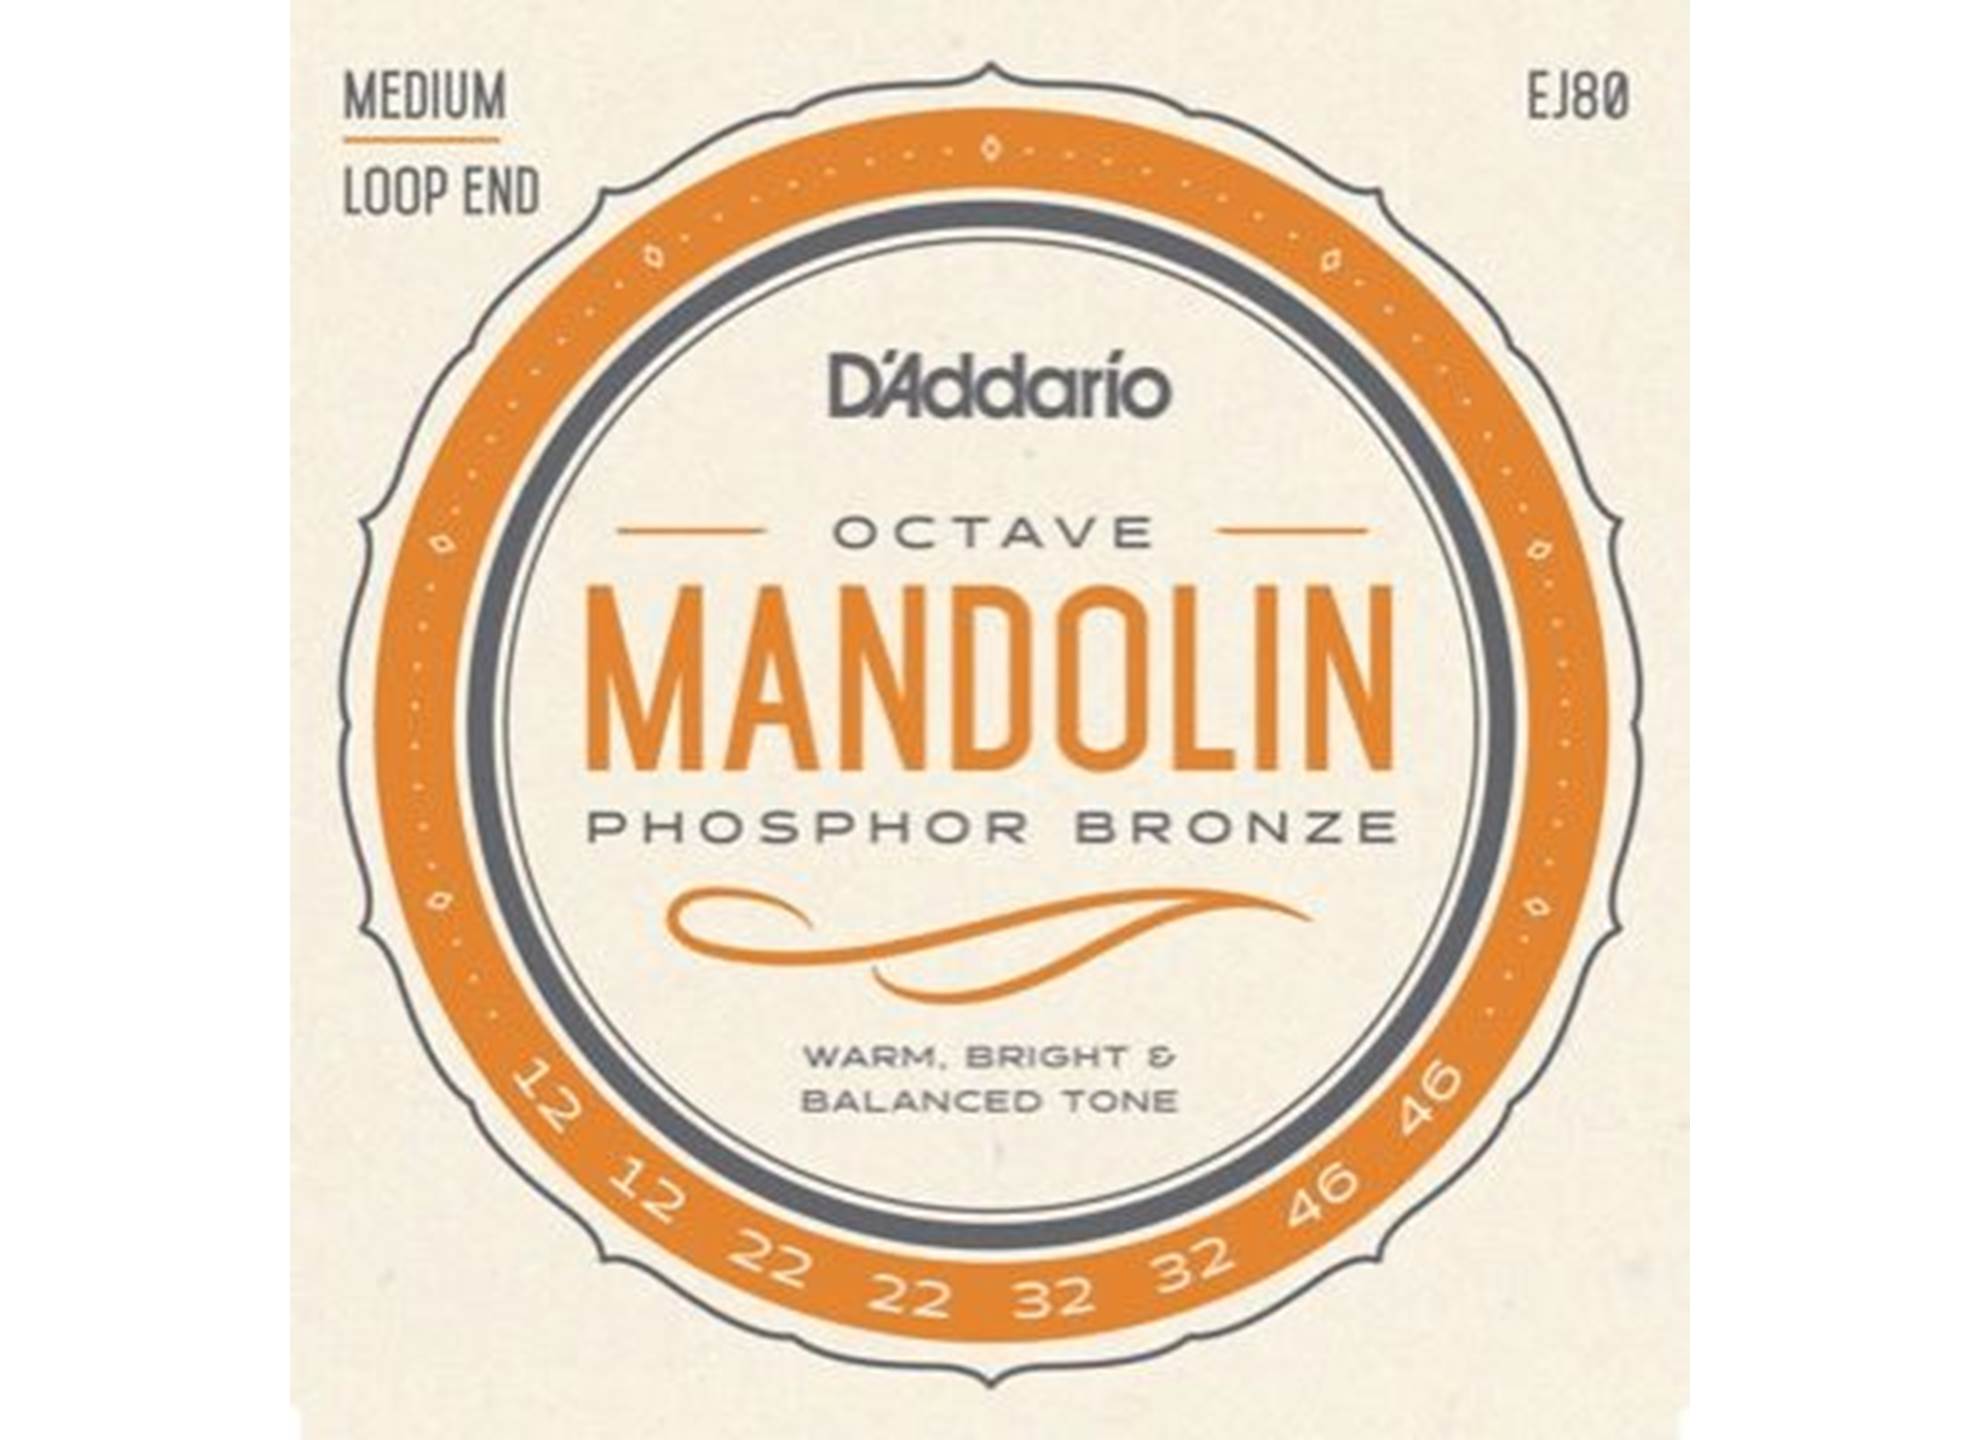 EJ80 Medium Octave Mandolin 012 - 046 